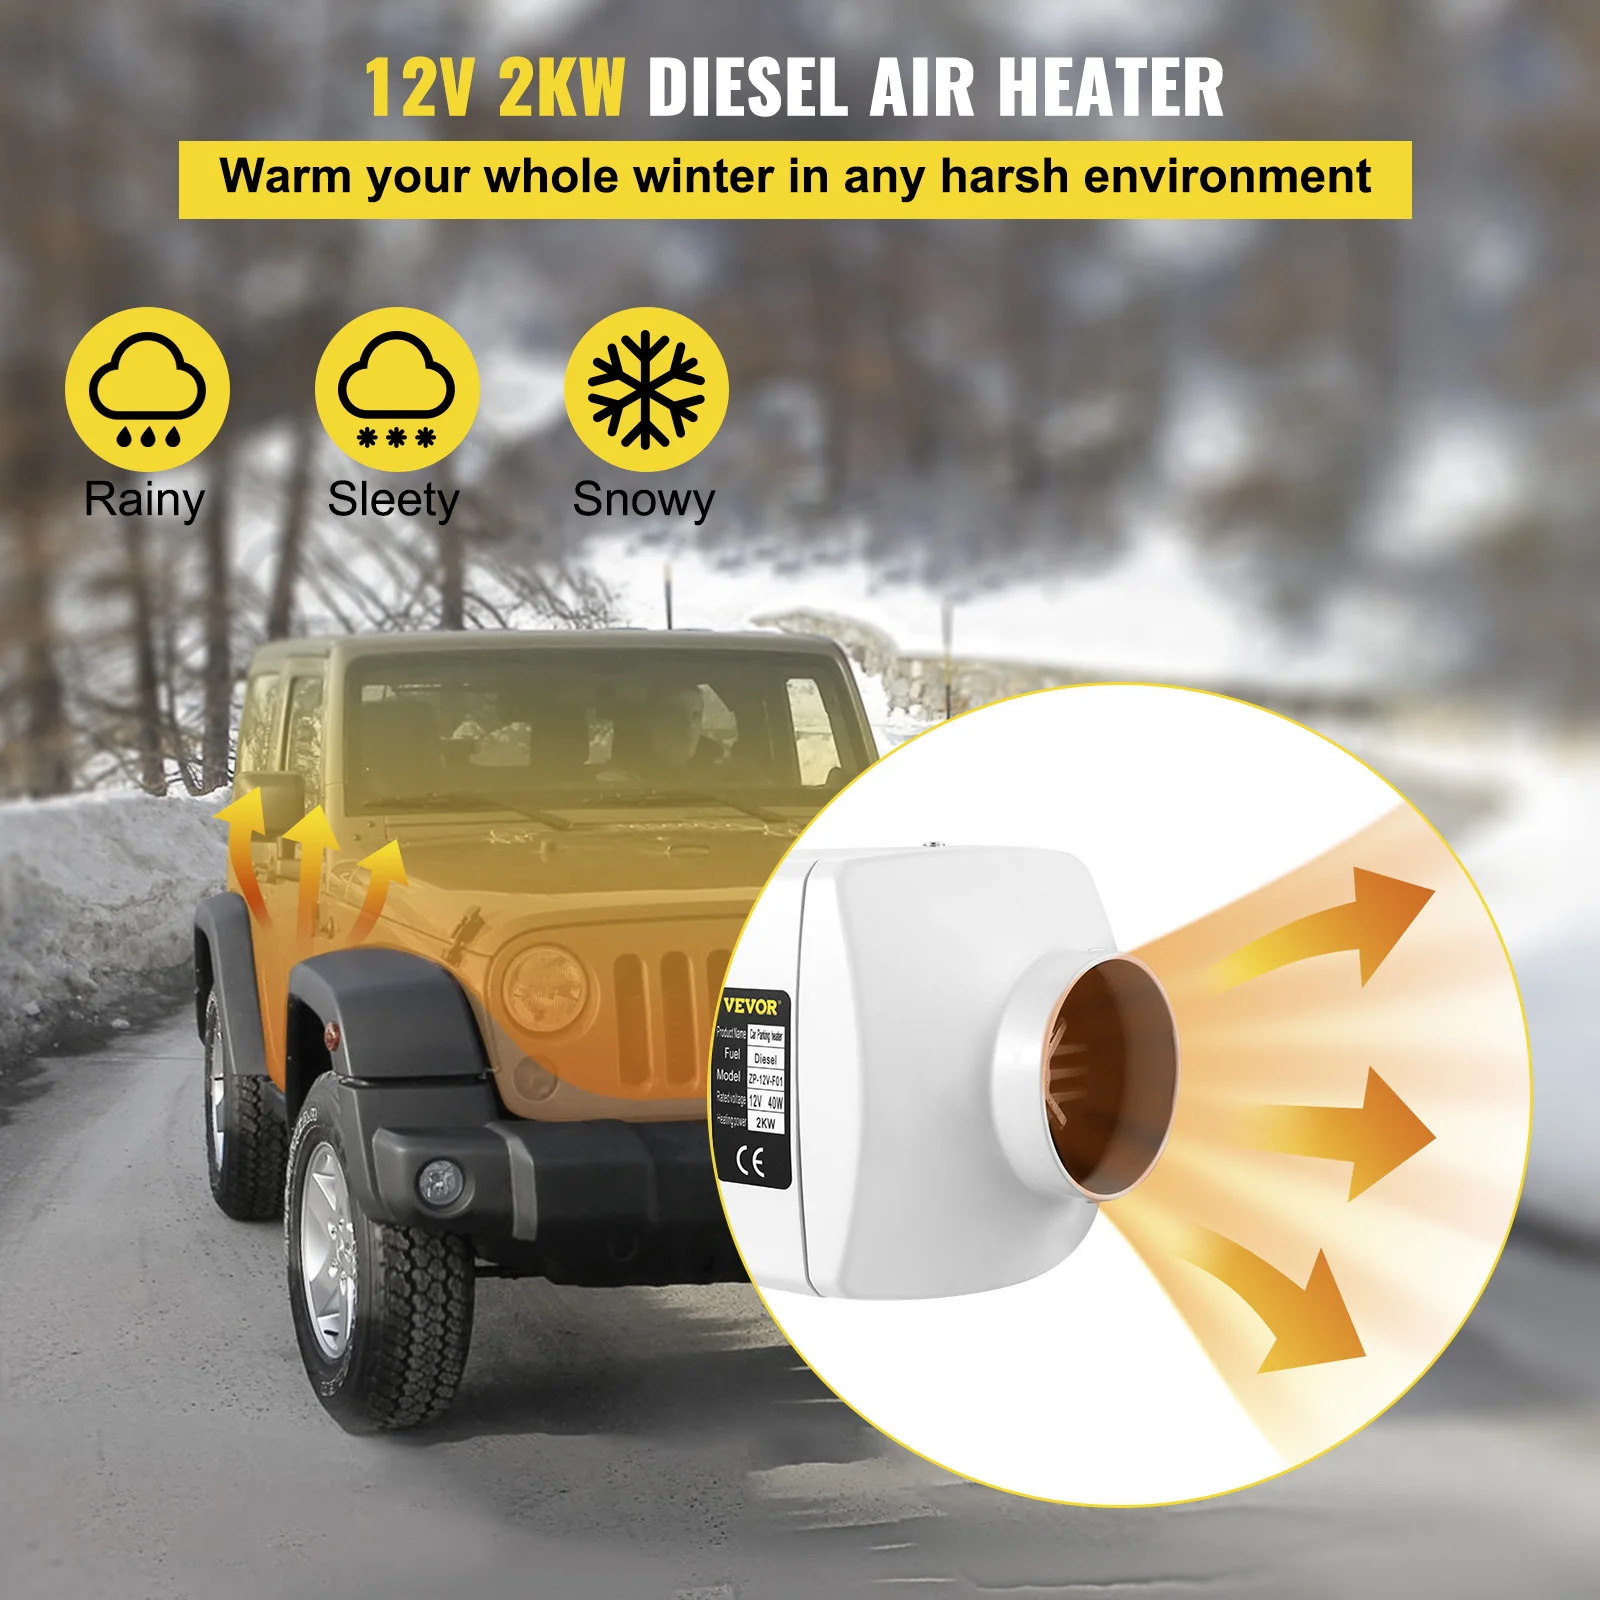 NEUF Chauffage Diesel 12V 2KW Réchauffeur d'air diesel kit